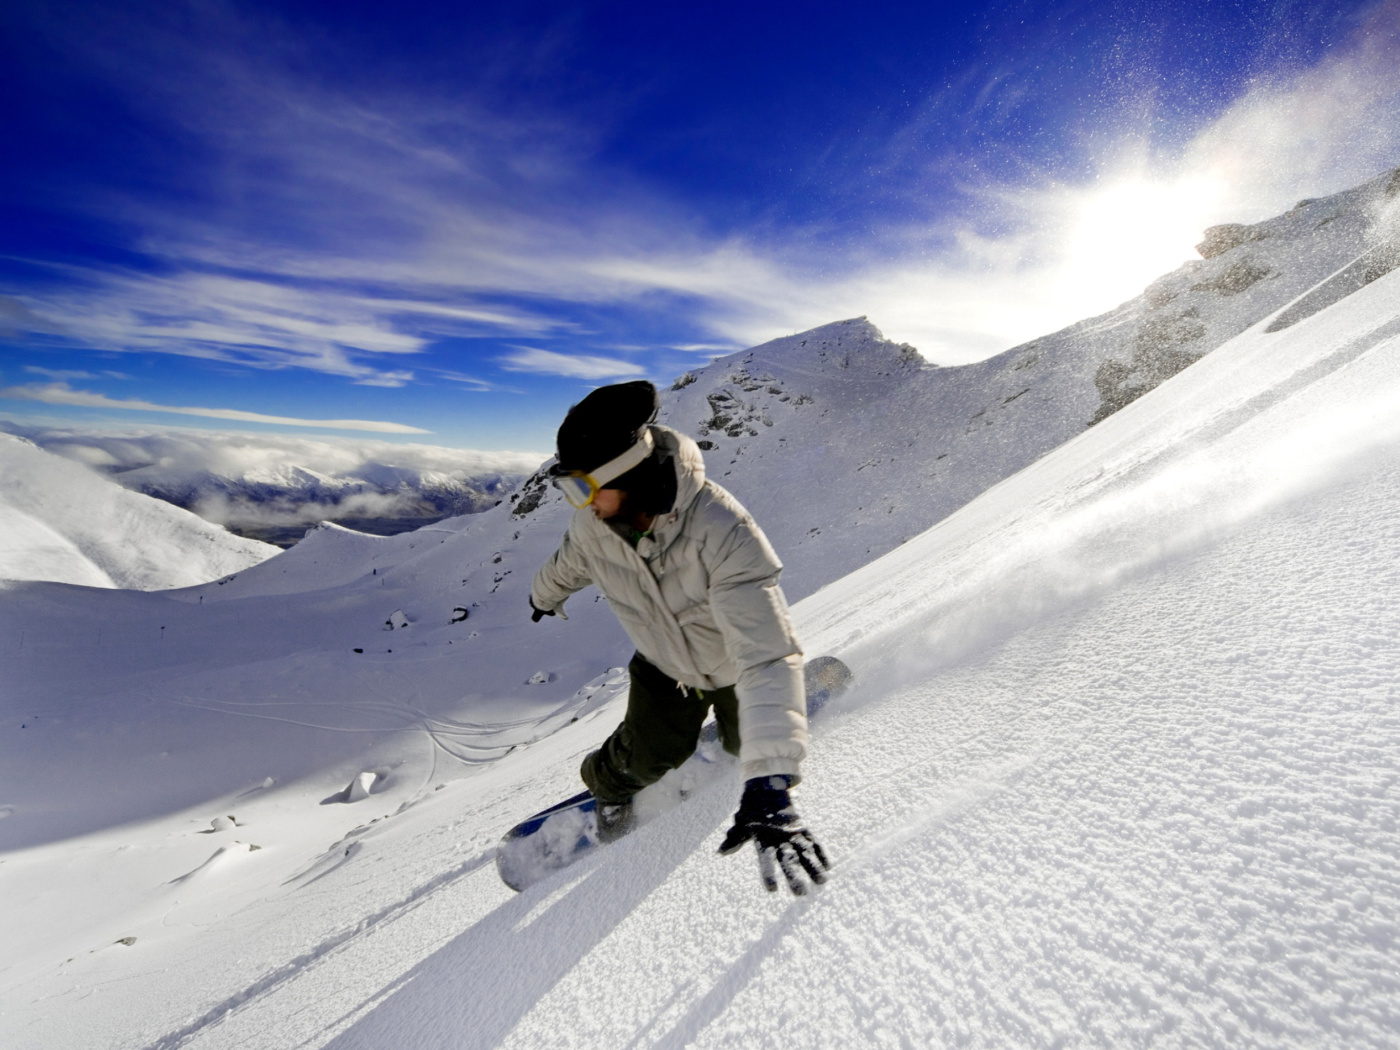 Outdoor activities as Snowboarding wallpaper 1400x1050